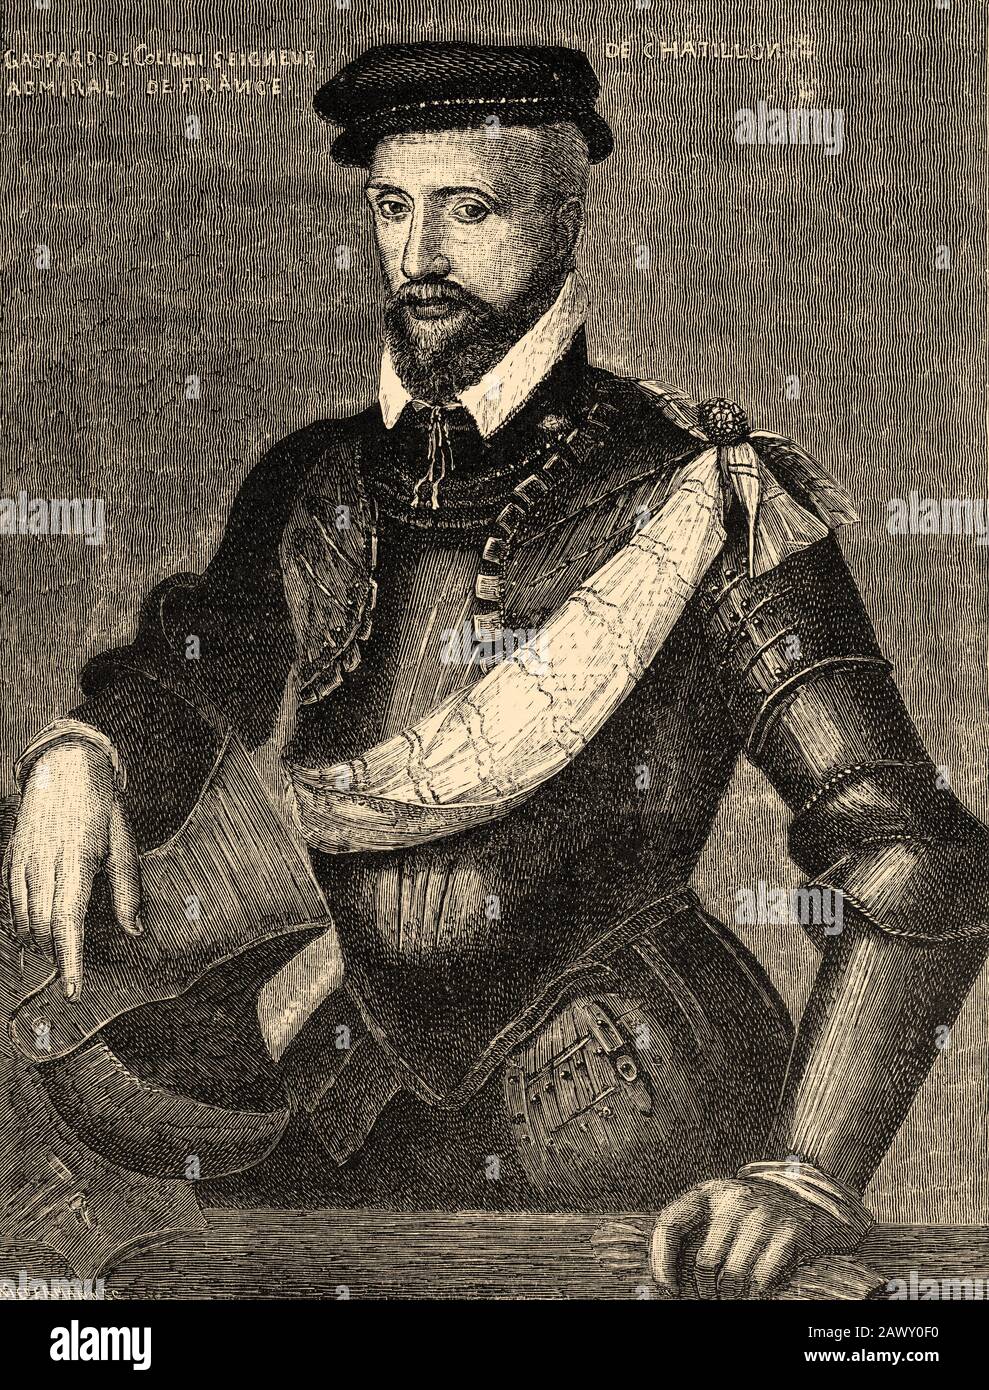 Retrato de Gaspard II de Coligny o Gaspard de Chatillon (Chatillon-sur-Loing, 1519 - París, 1572), soldado francés, almirante de Francia y militar Foto de stock